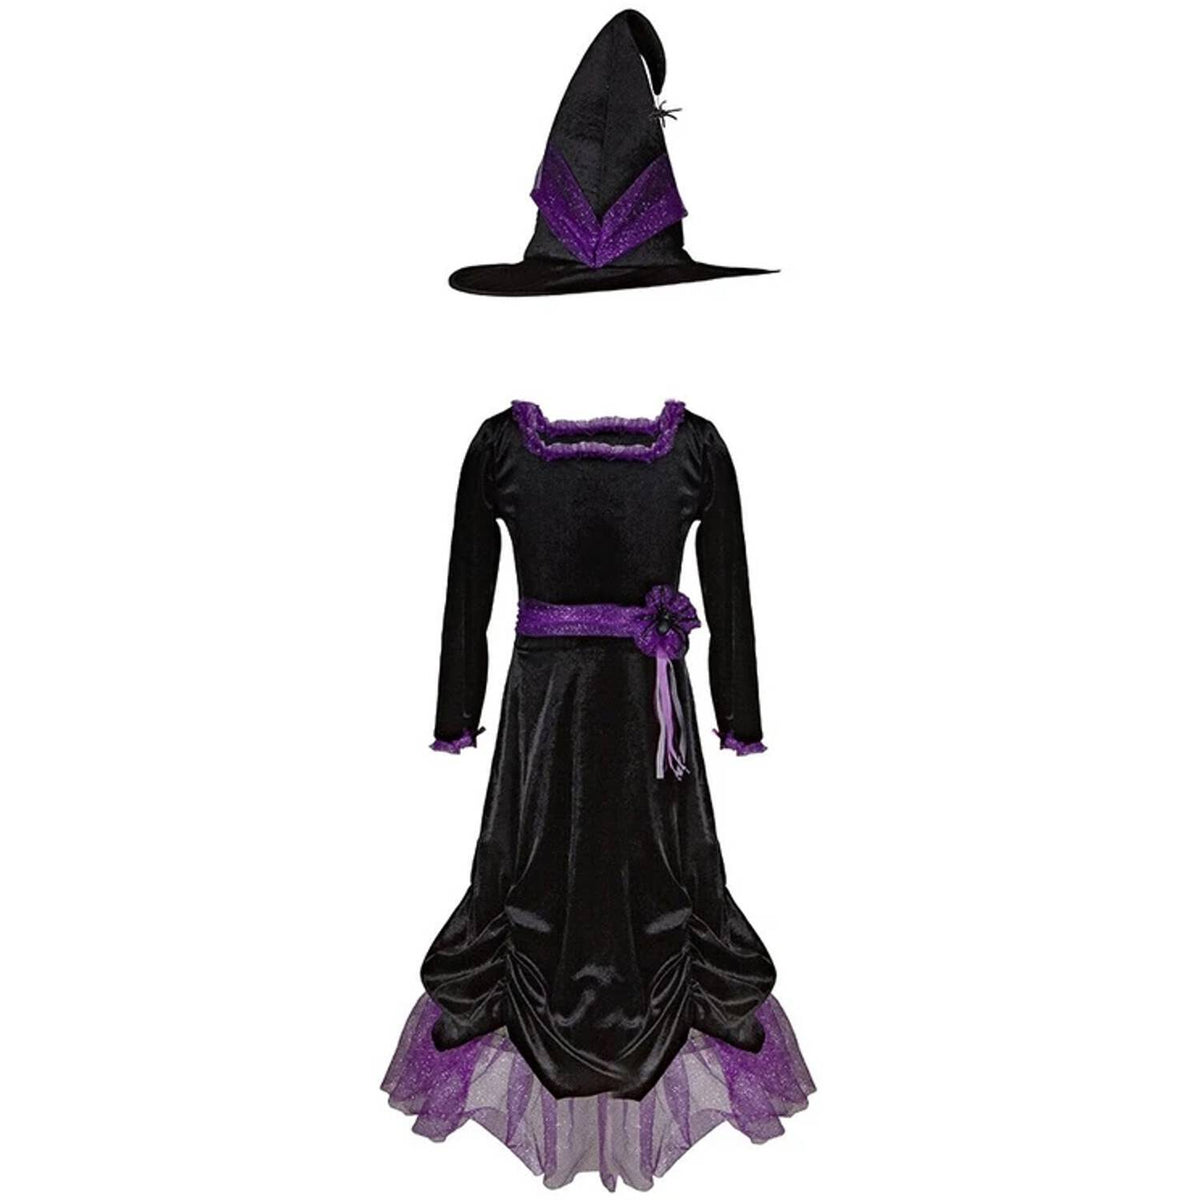 Dieses schwarze  Hexenkleid mit Glitzerrüschen in lila wird mit Samthut geliefert und ist perfekt für jede Party an Halloween, Fasching oder Karneval. Hex, Hex und der Spaß beginnt. 